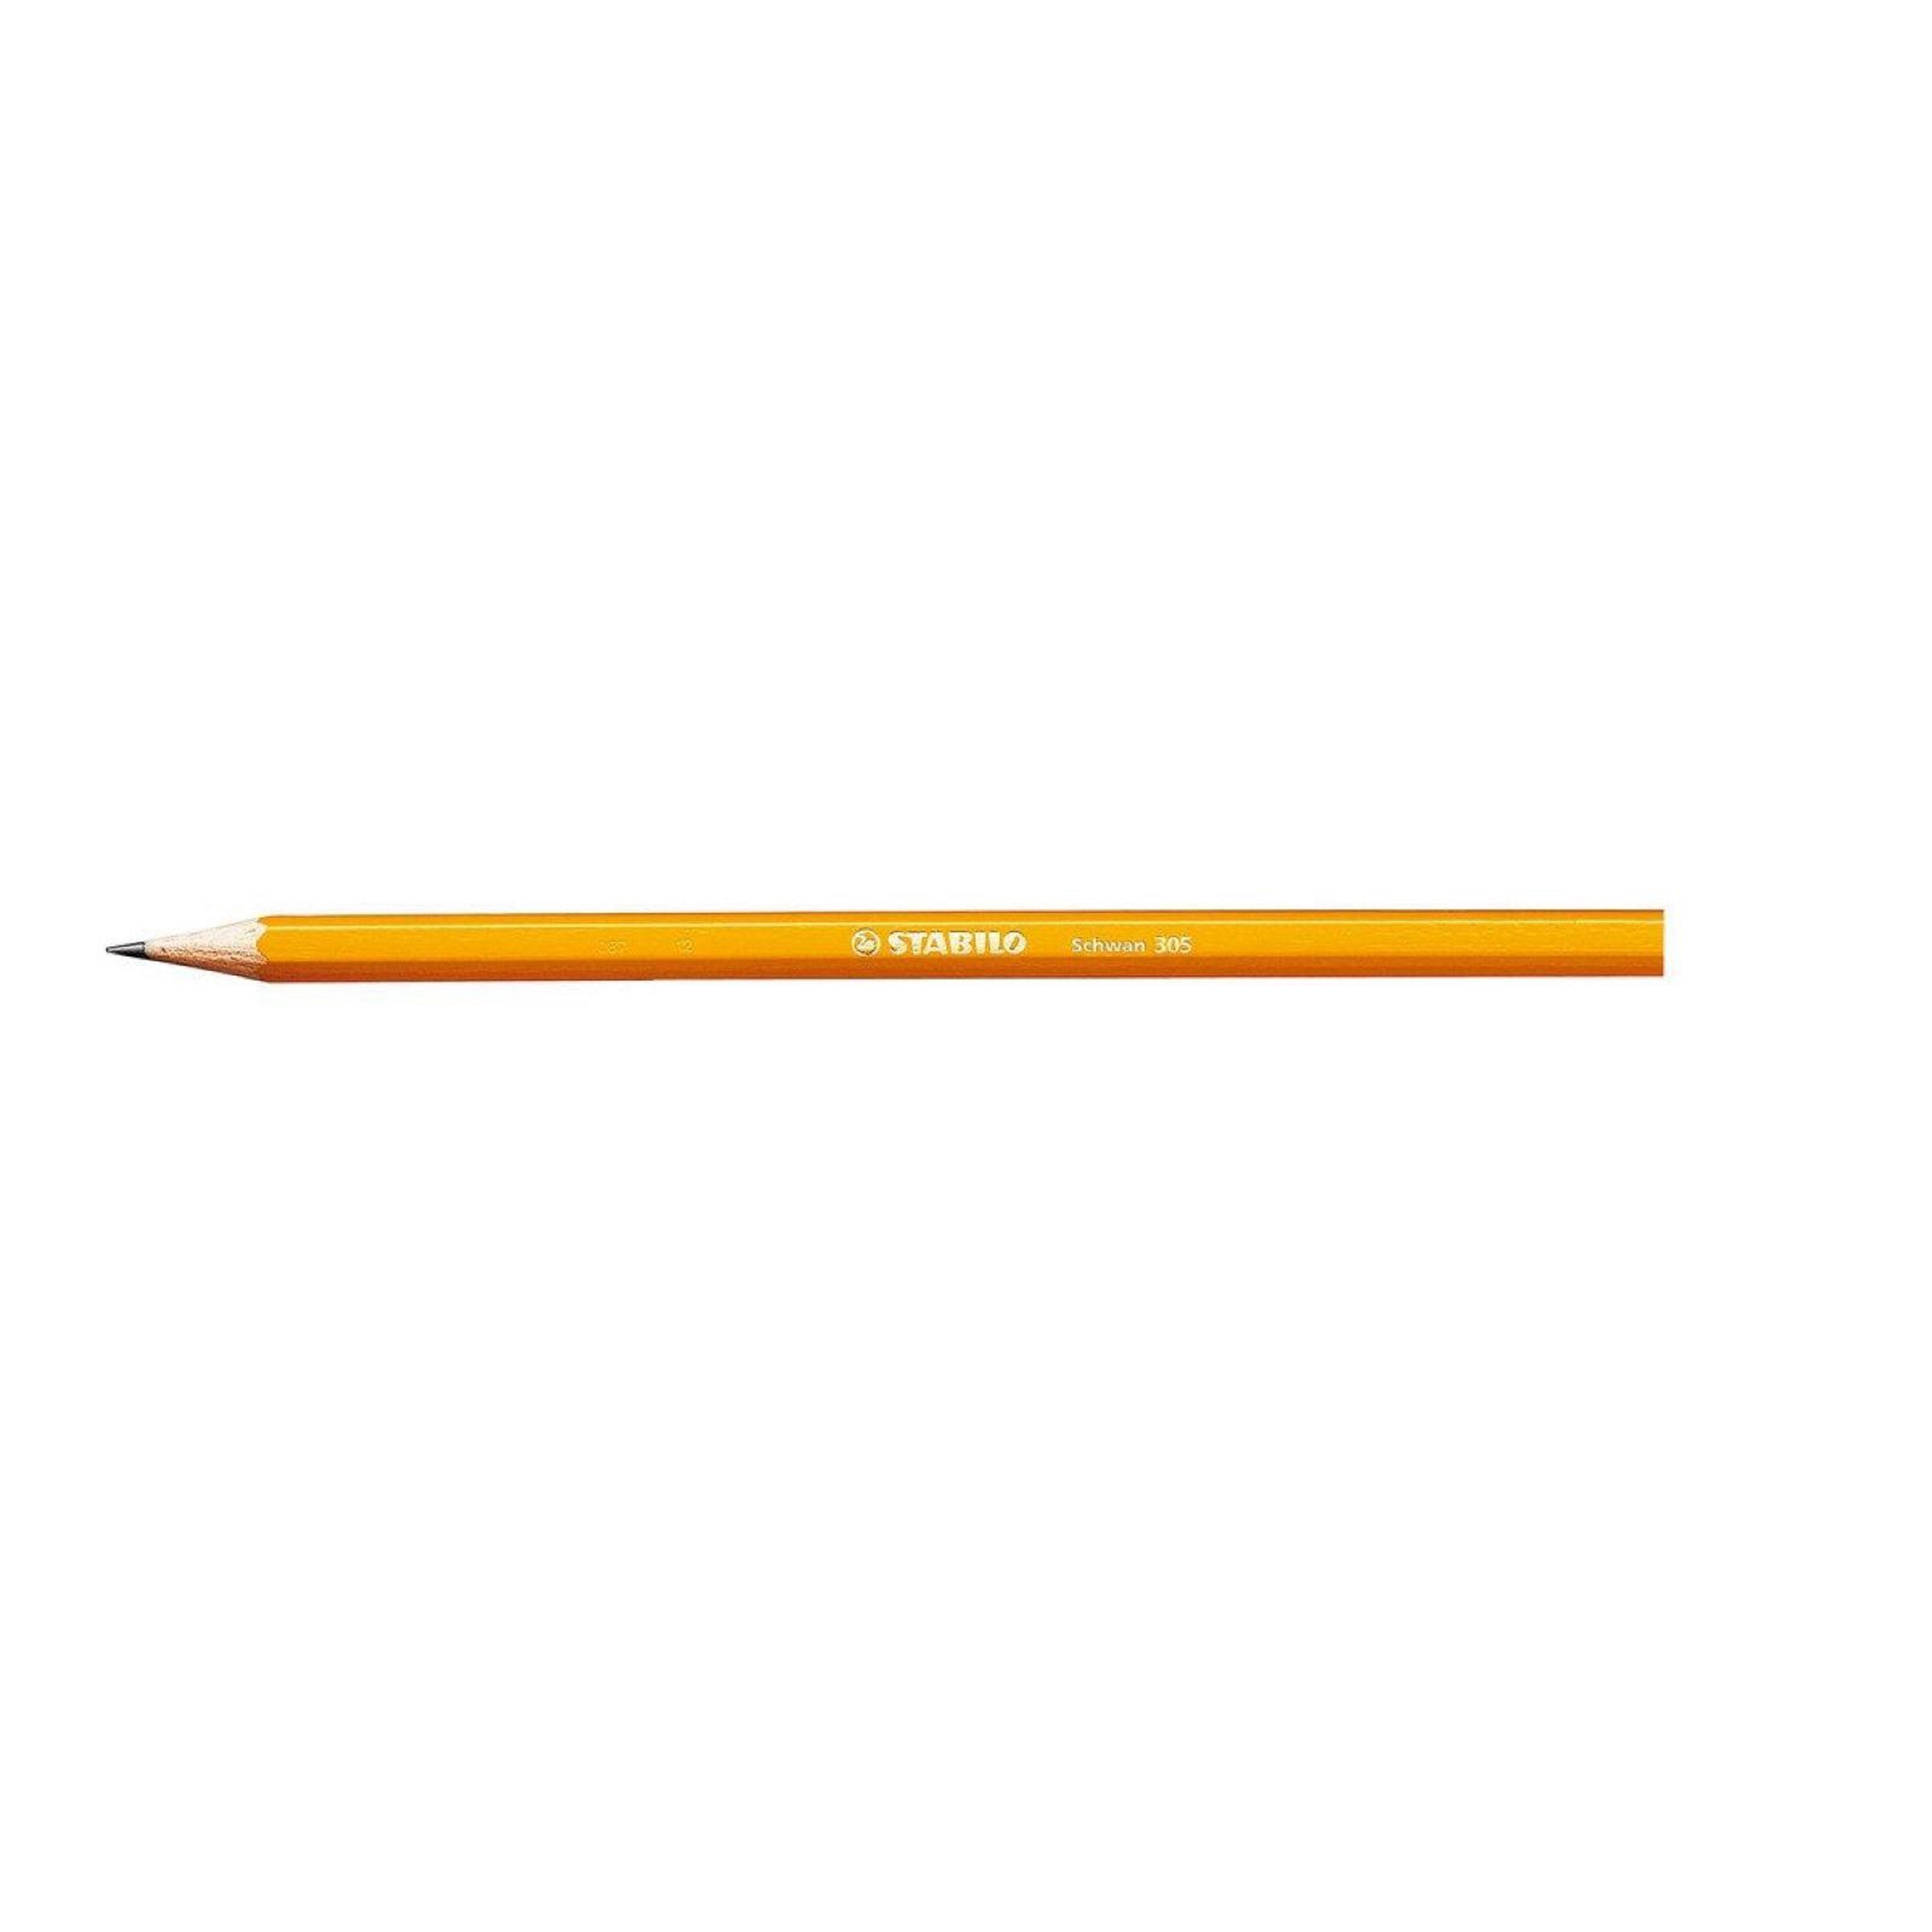 Creion grafit - Schwan 305 - HB | Stabilo